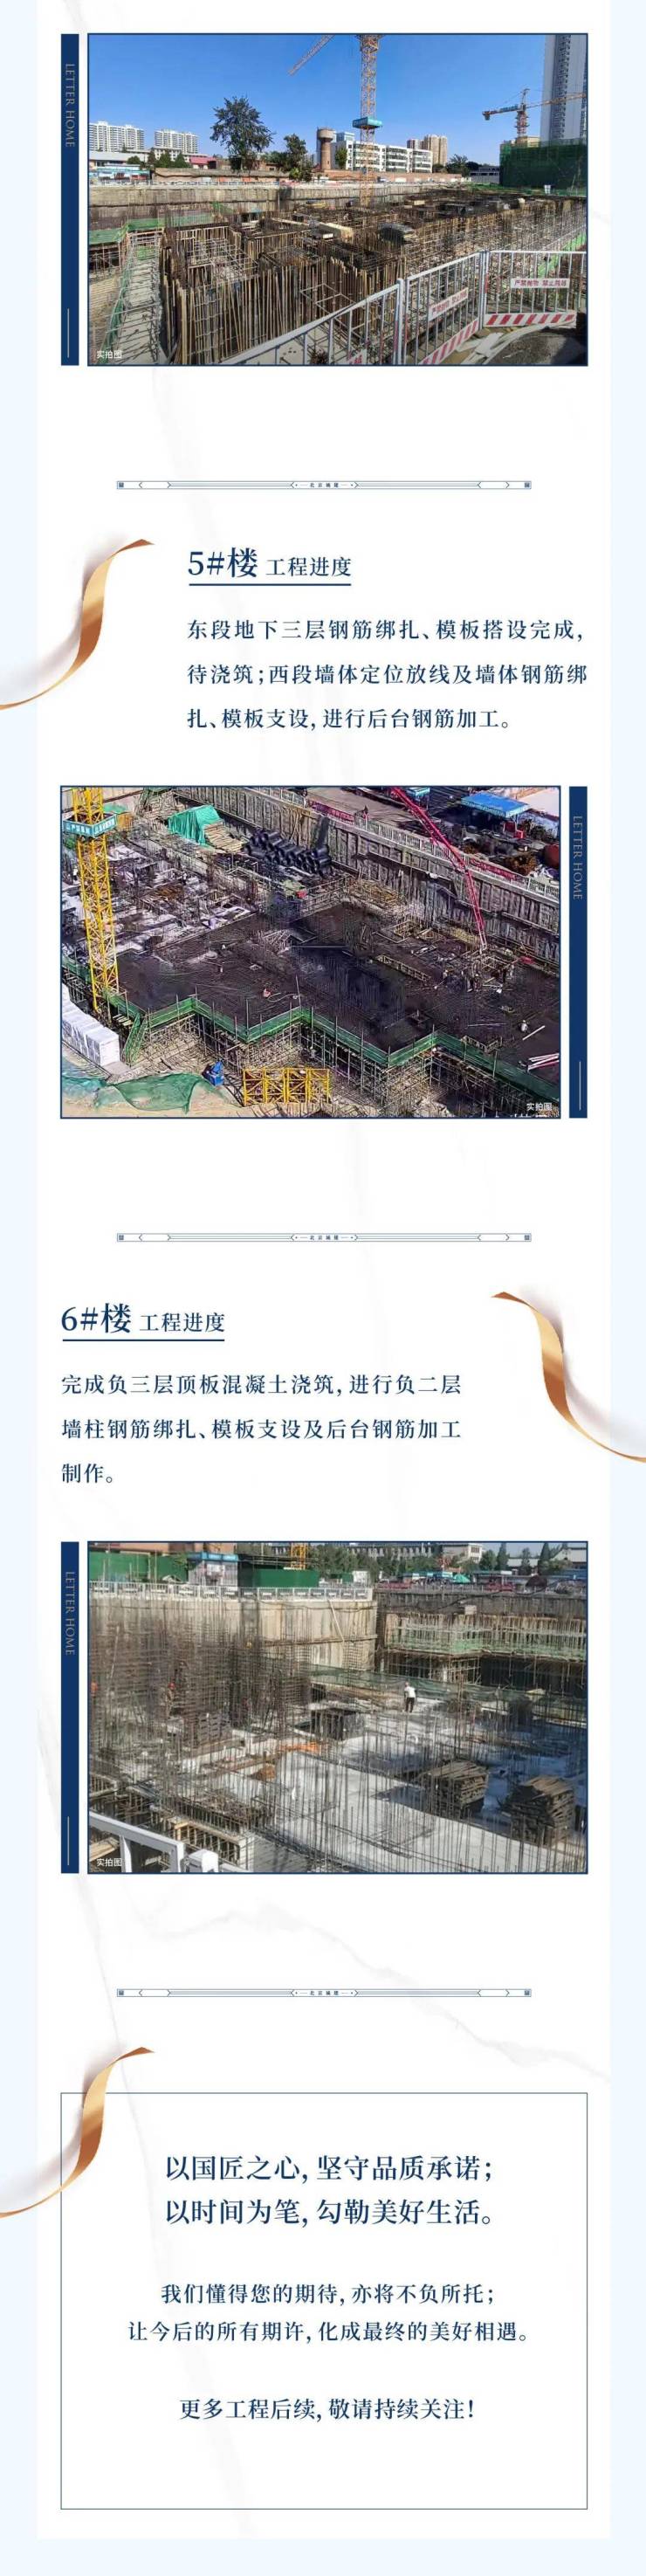 北京城建&middot;国誉上城|9月工程进度播报